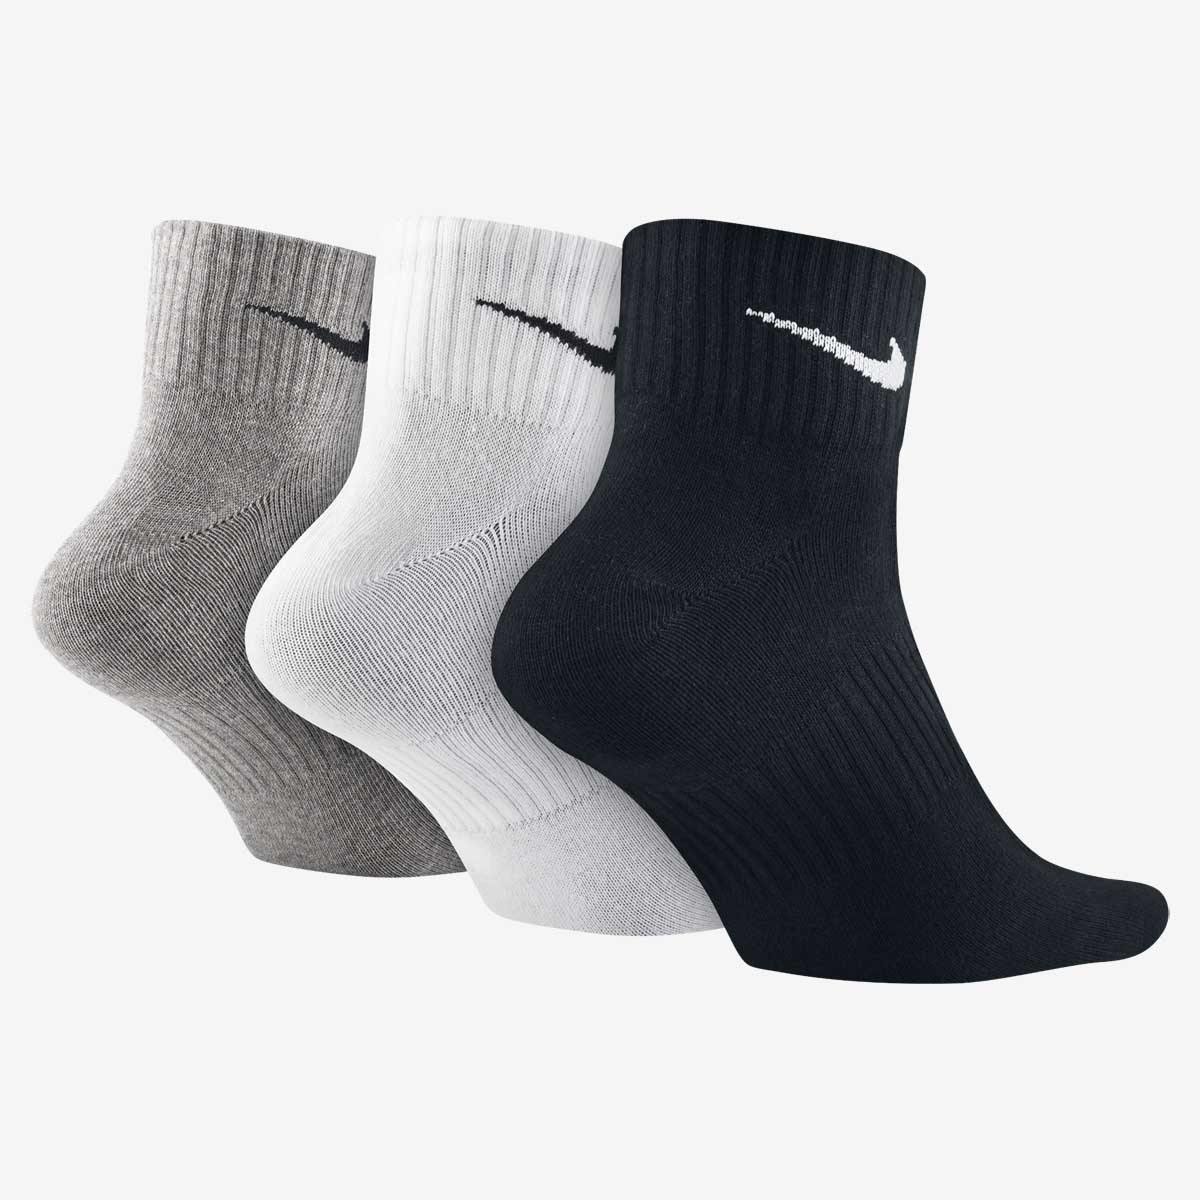 Носки Nike 3PPK LIGHTWEIGHT QUARTER (SM